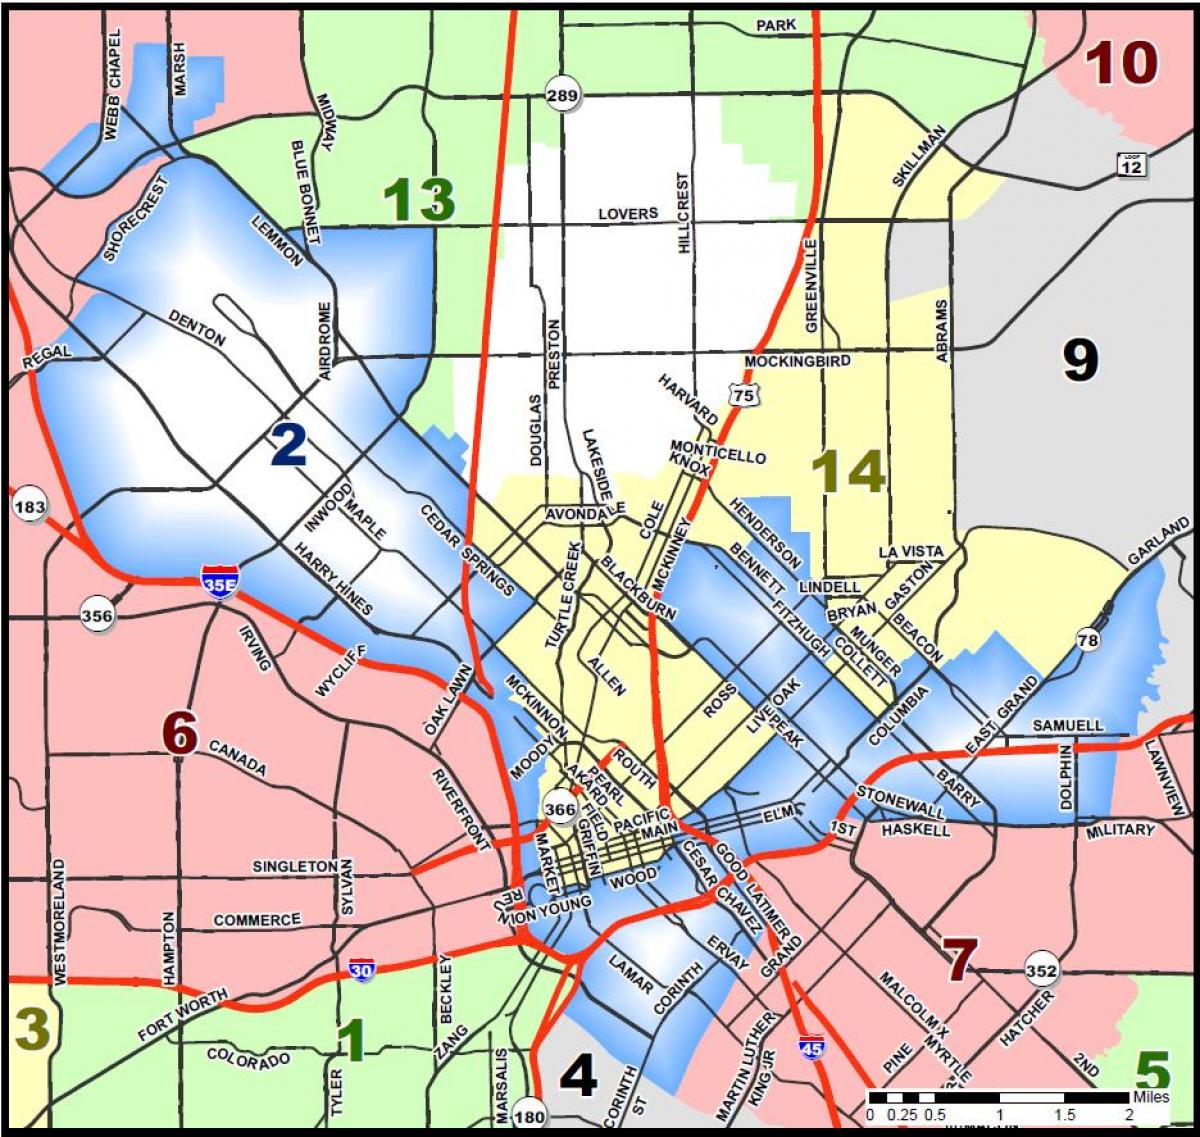 քաղաք: Dallas գոտիավորման քարտեզի վրա